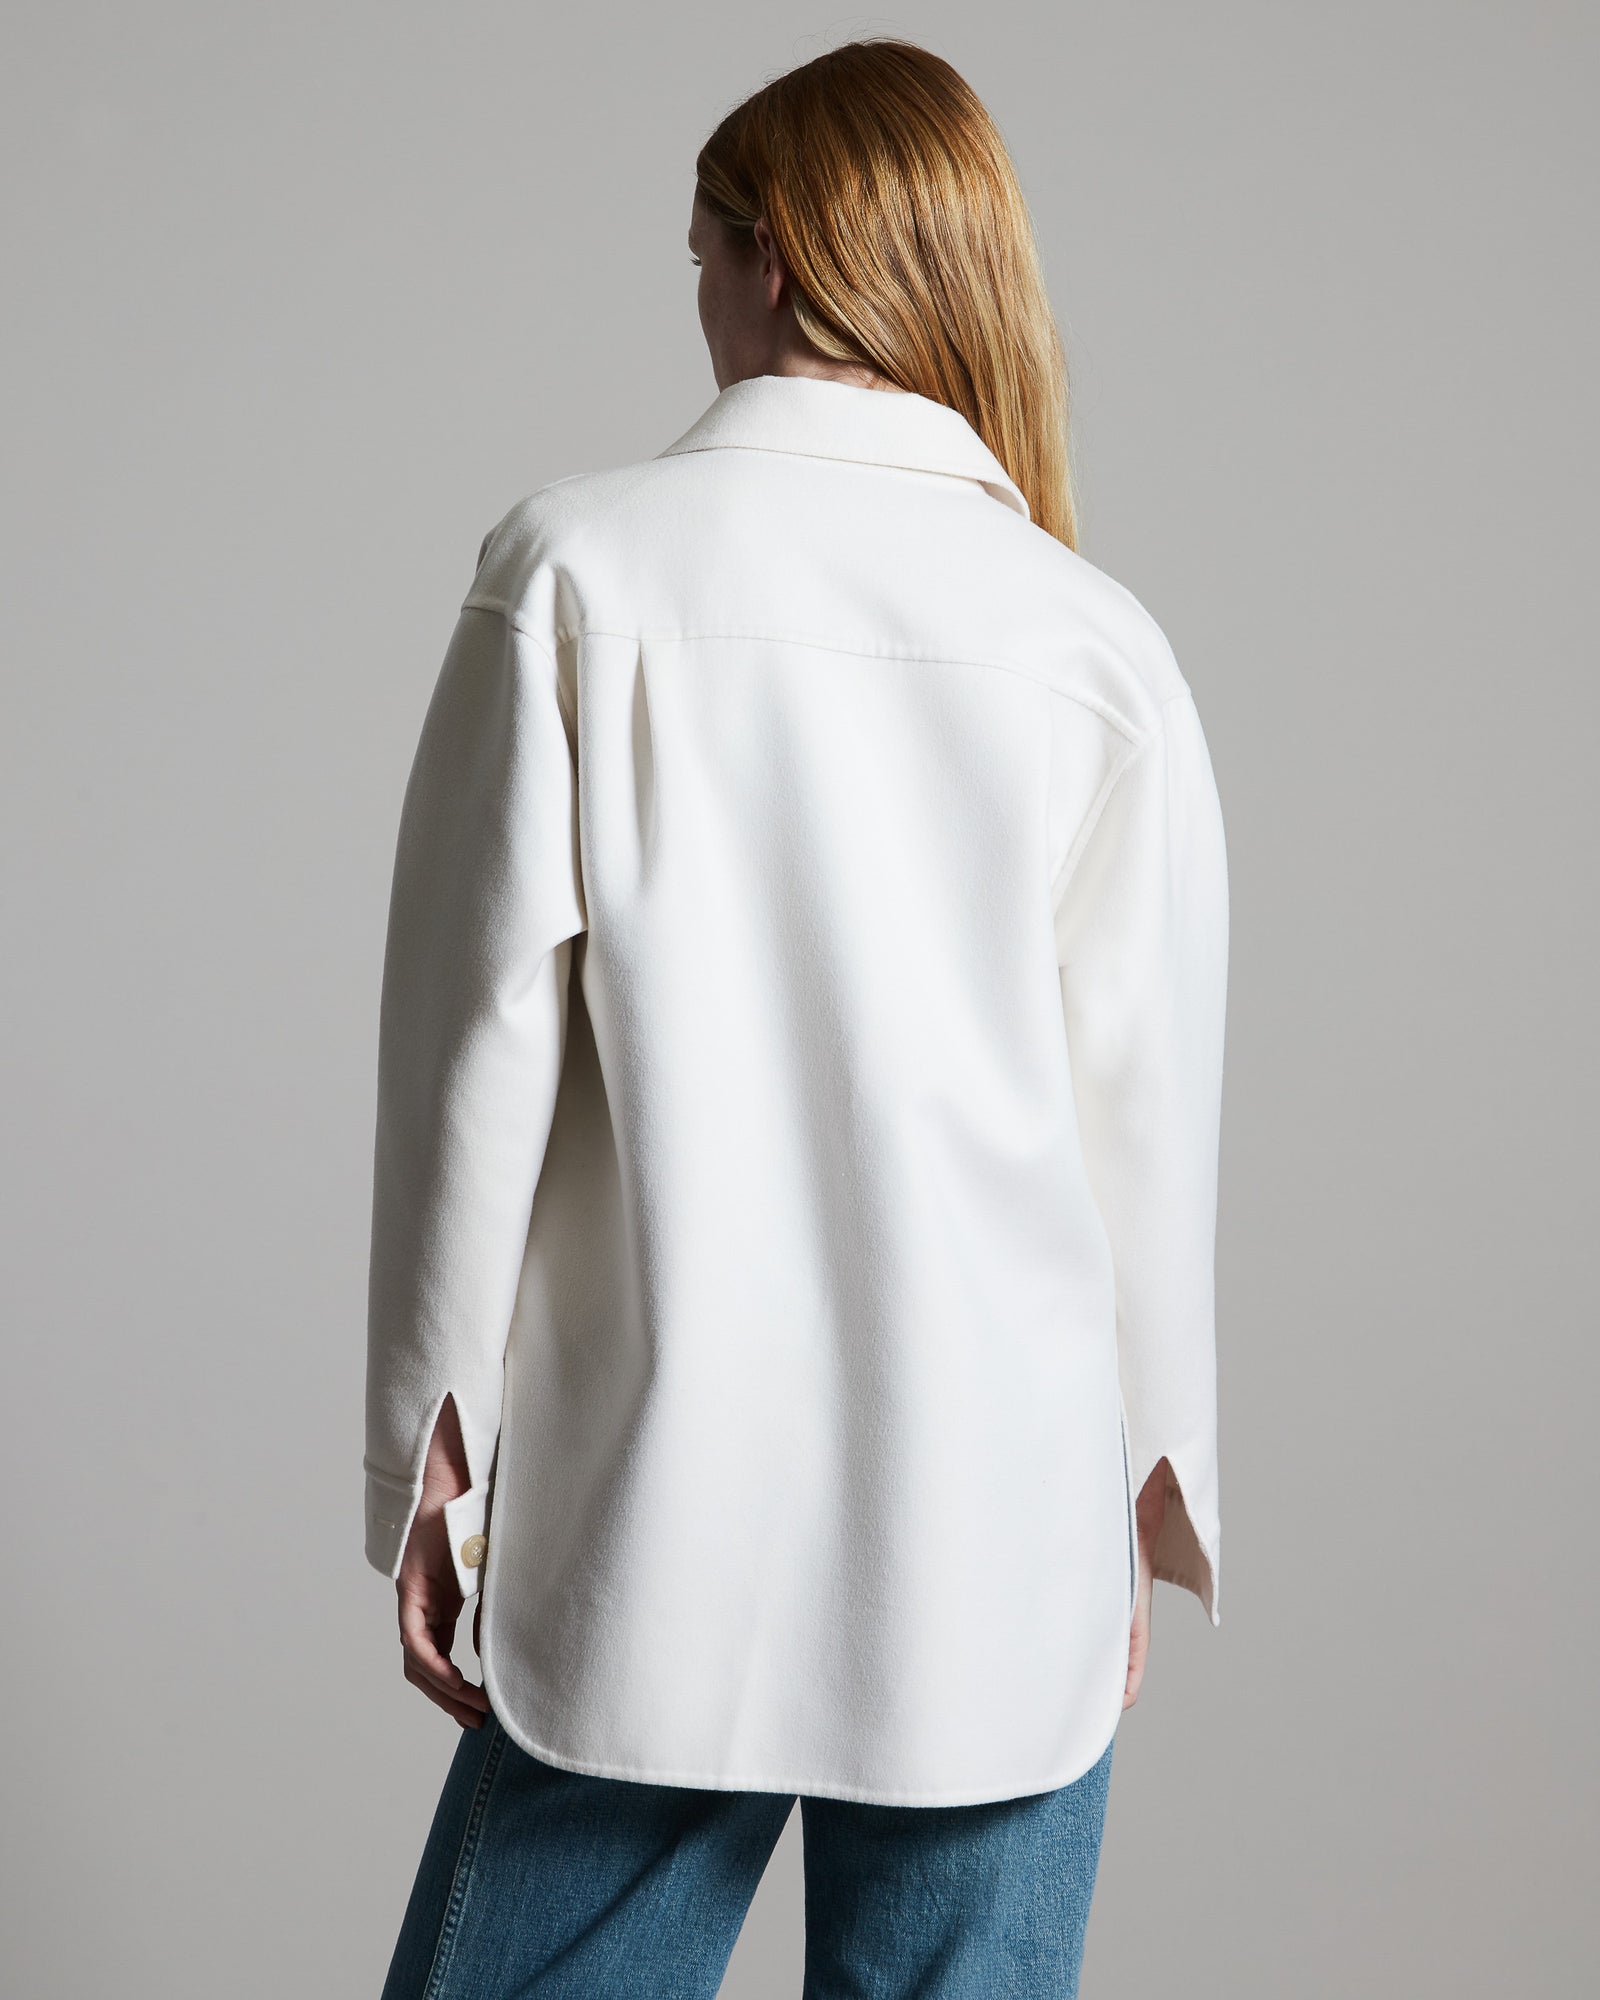 Shirt Jacke aus weißem Kaschmir